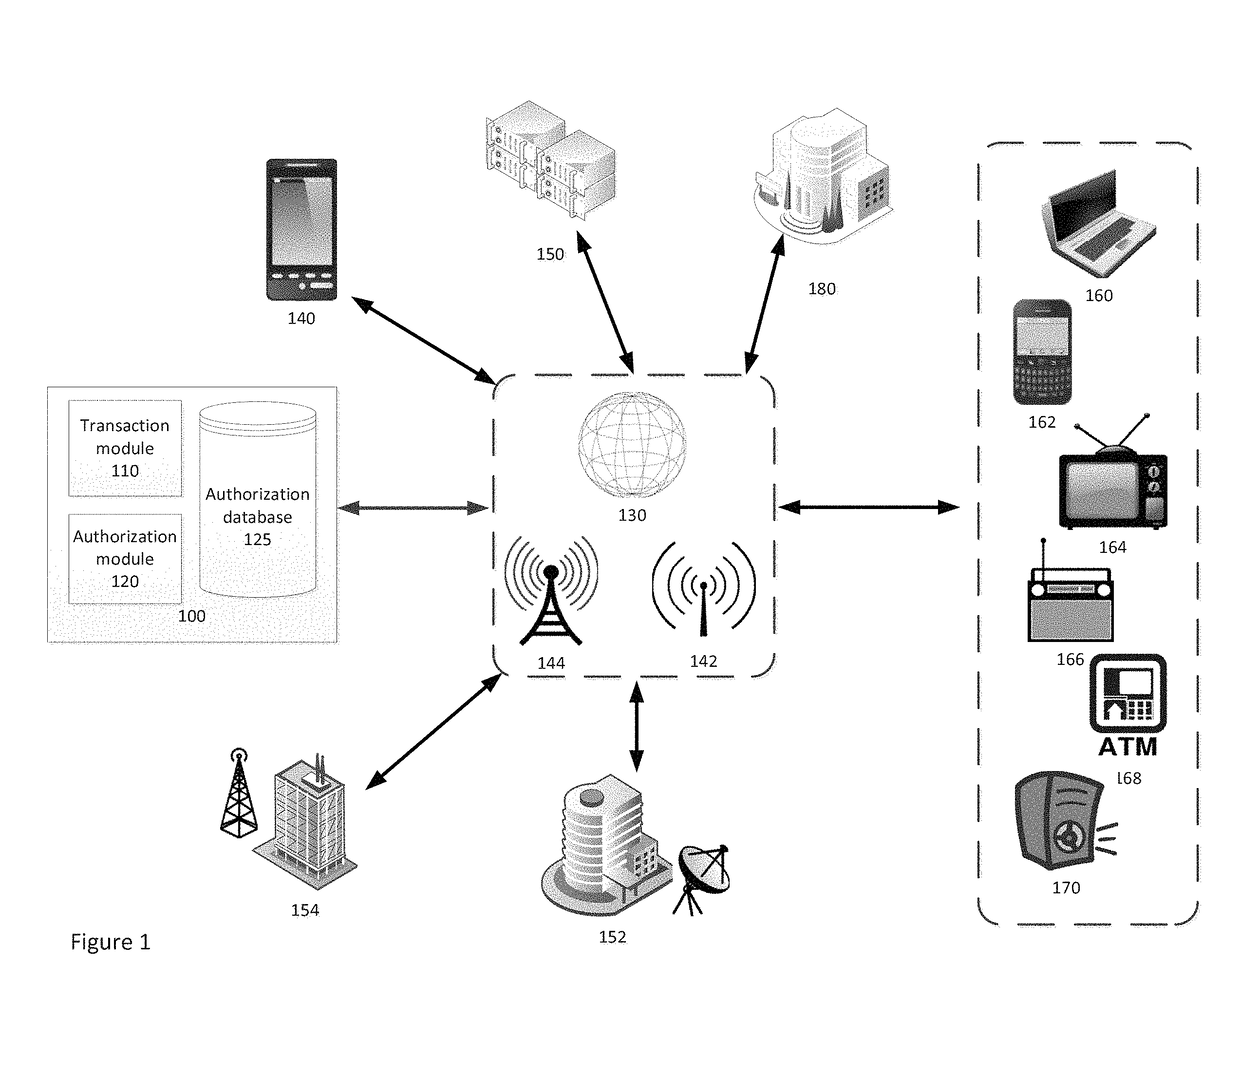 Audio-based electronic transaction authorization system and method